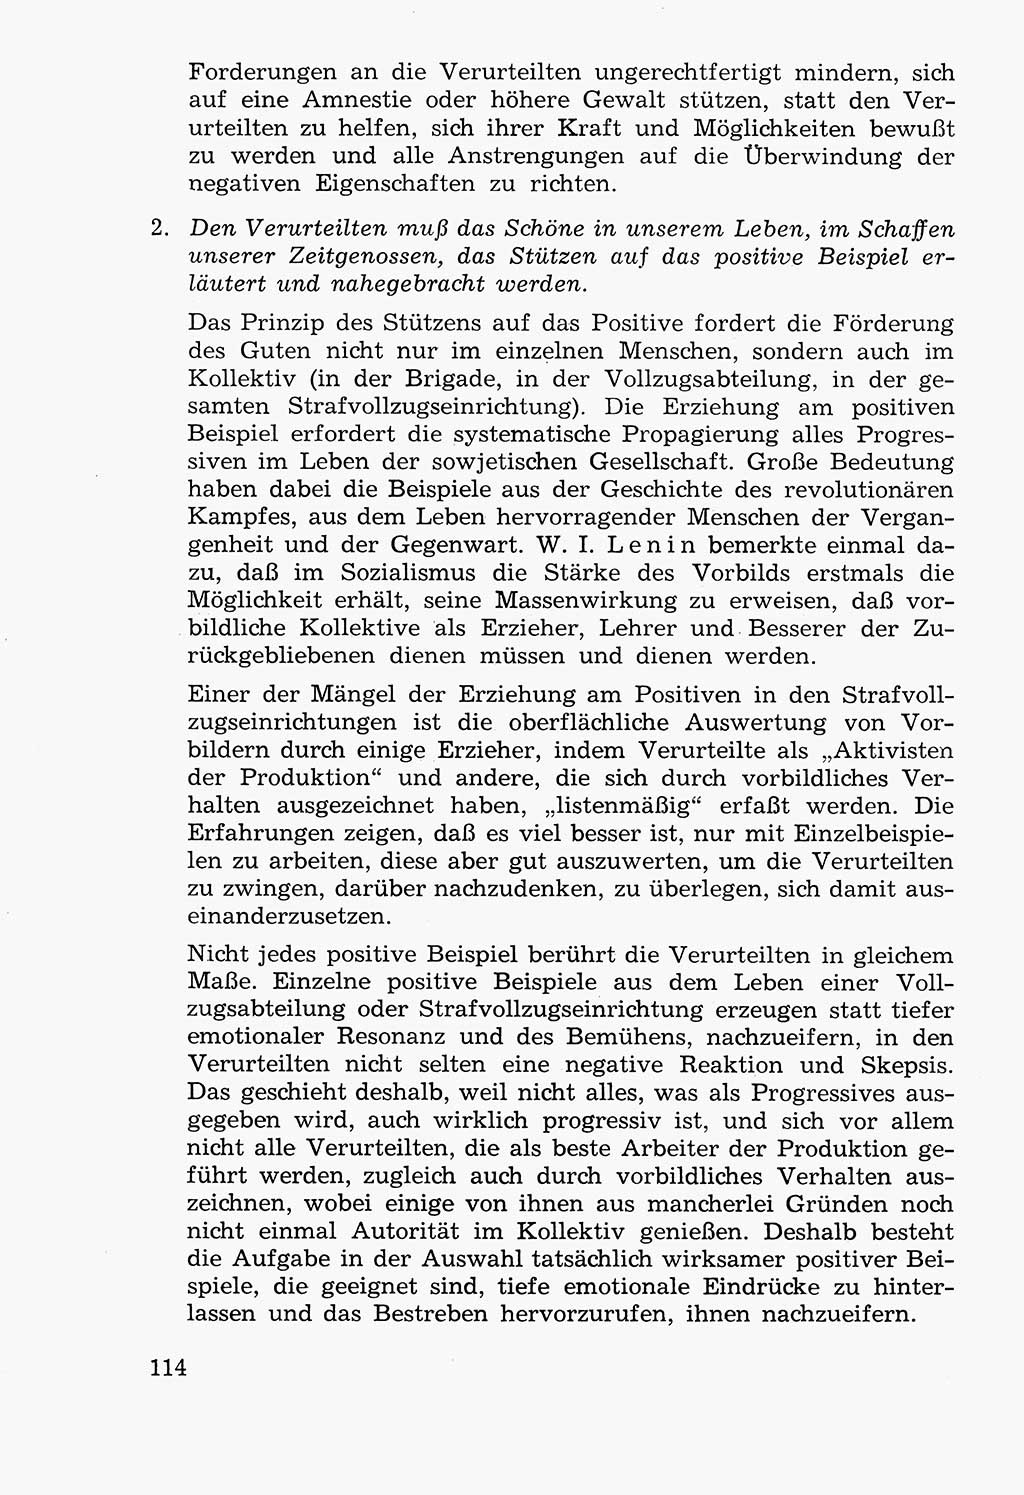 Lehrbuch der Strafvollzugspädagogik [Deutsche Demokratische Republik (DDR)] 1969, Seite 114 (Lb. SV-Pd. DDR 1969, S. 114)